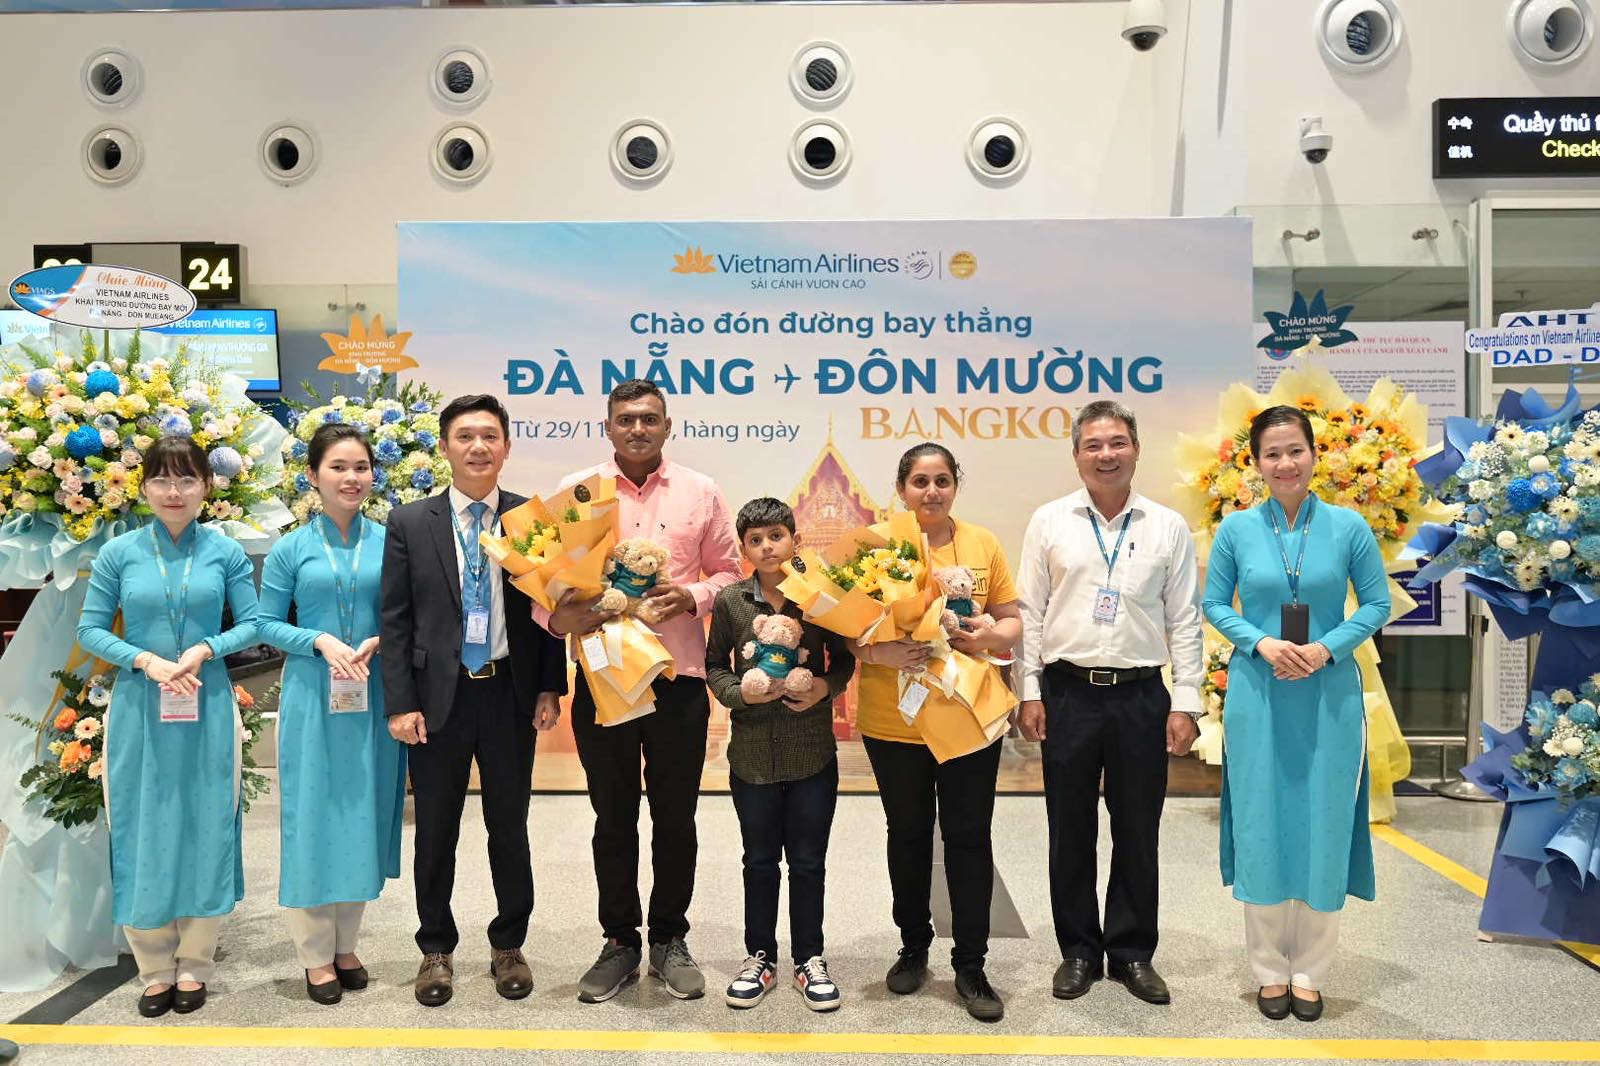 vietnam airlines khai truong duong bay da nang don muong hinh 2